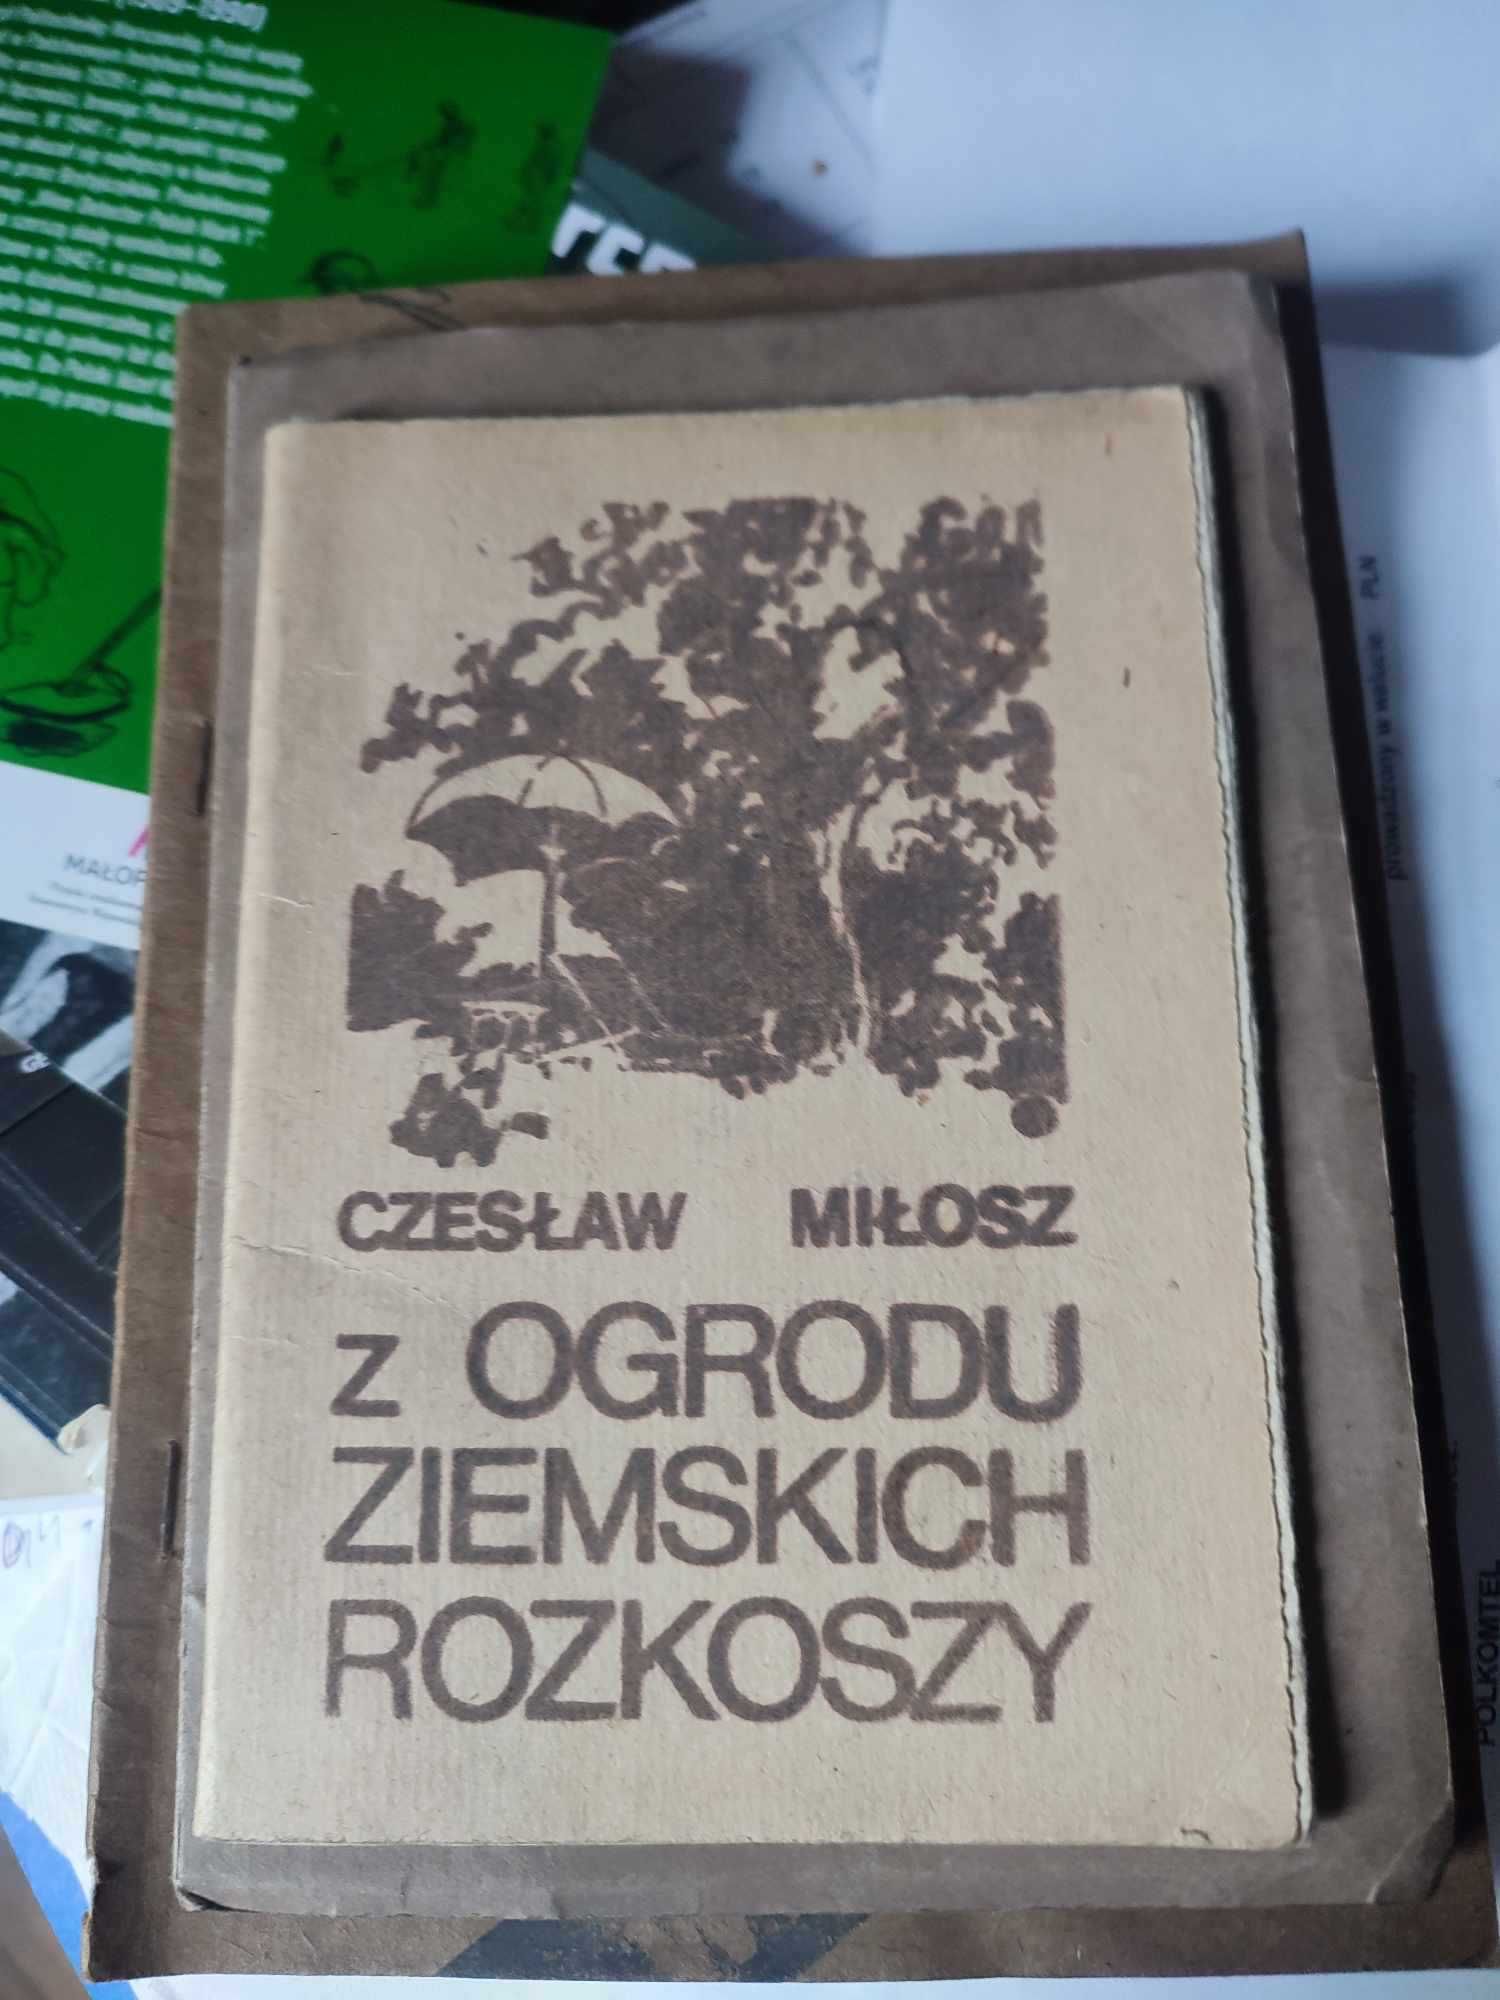 Czesław Miłosz "Z ogrodu Ziemskich Rozkoszy"